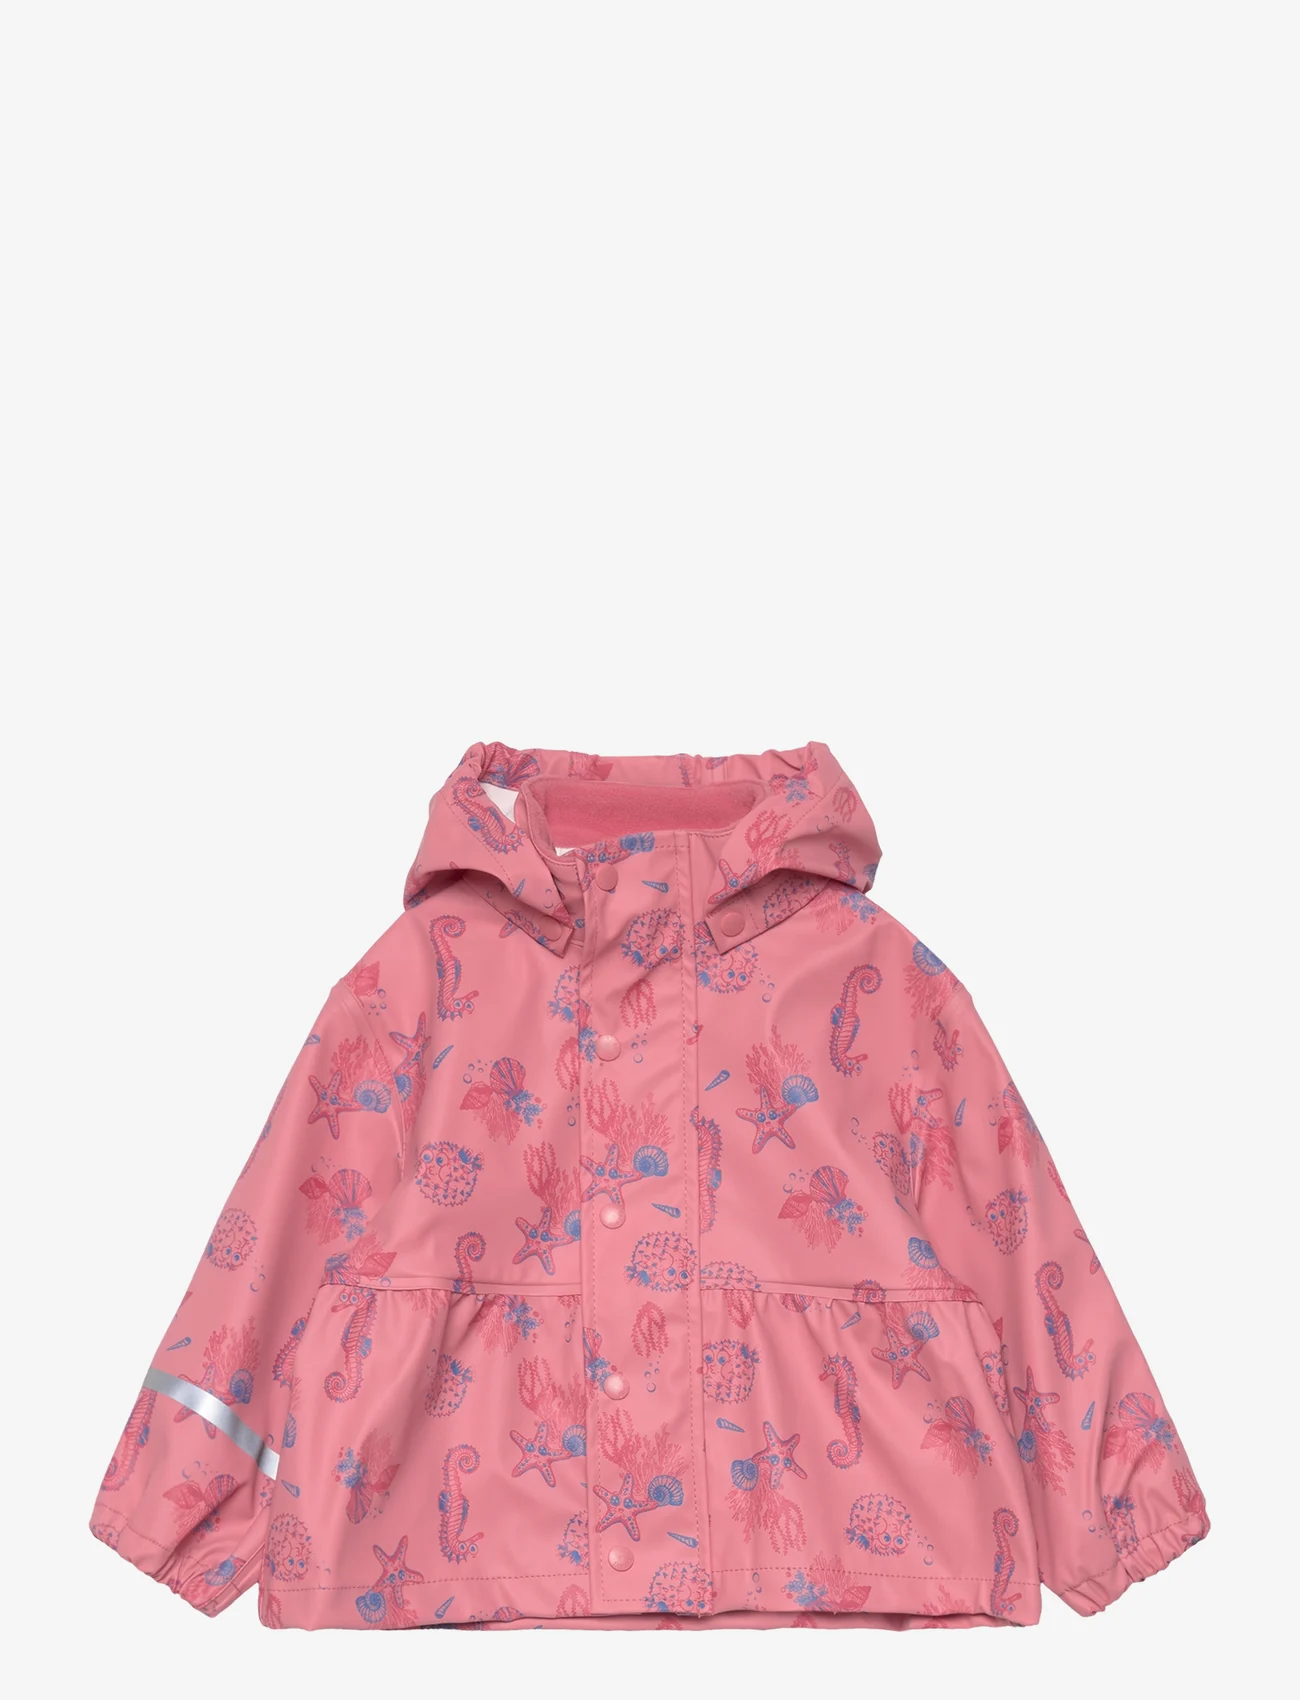 CeLaVi - Rainwear Girls Jacket - AOP - rain jackets - slate rose - 0